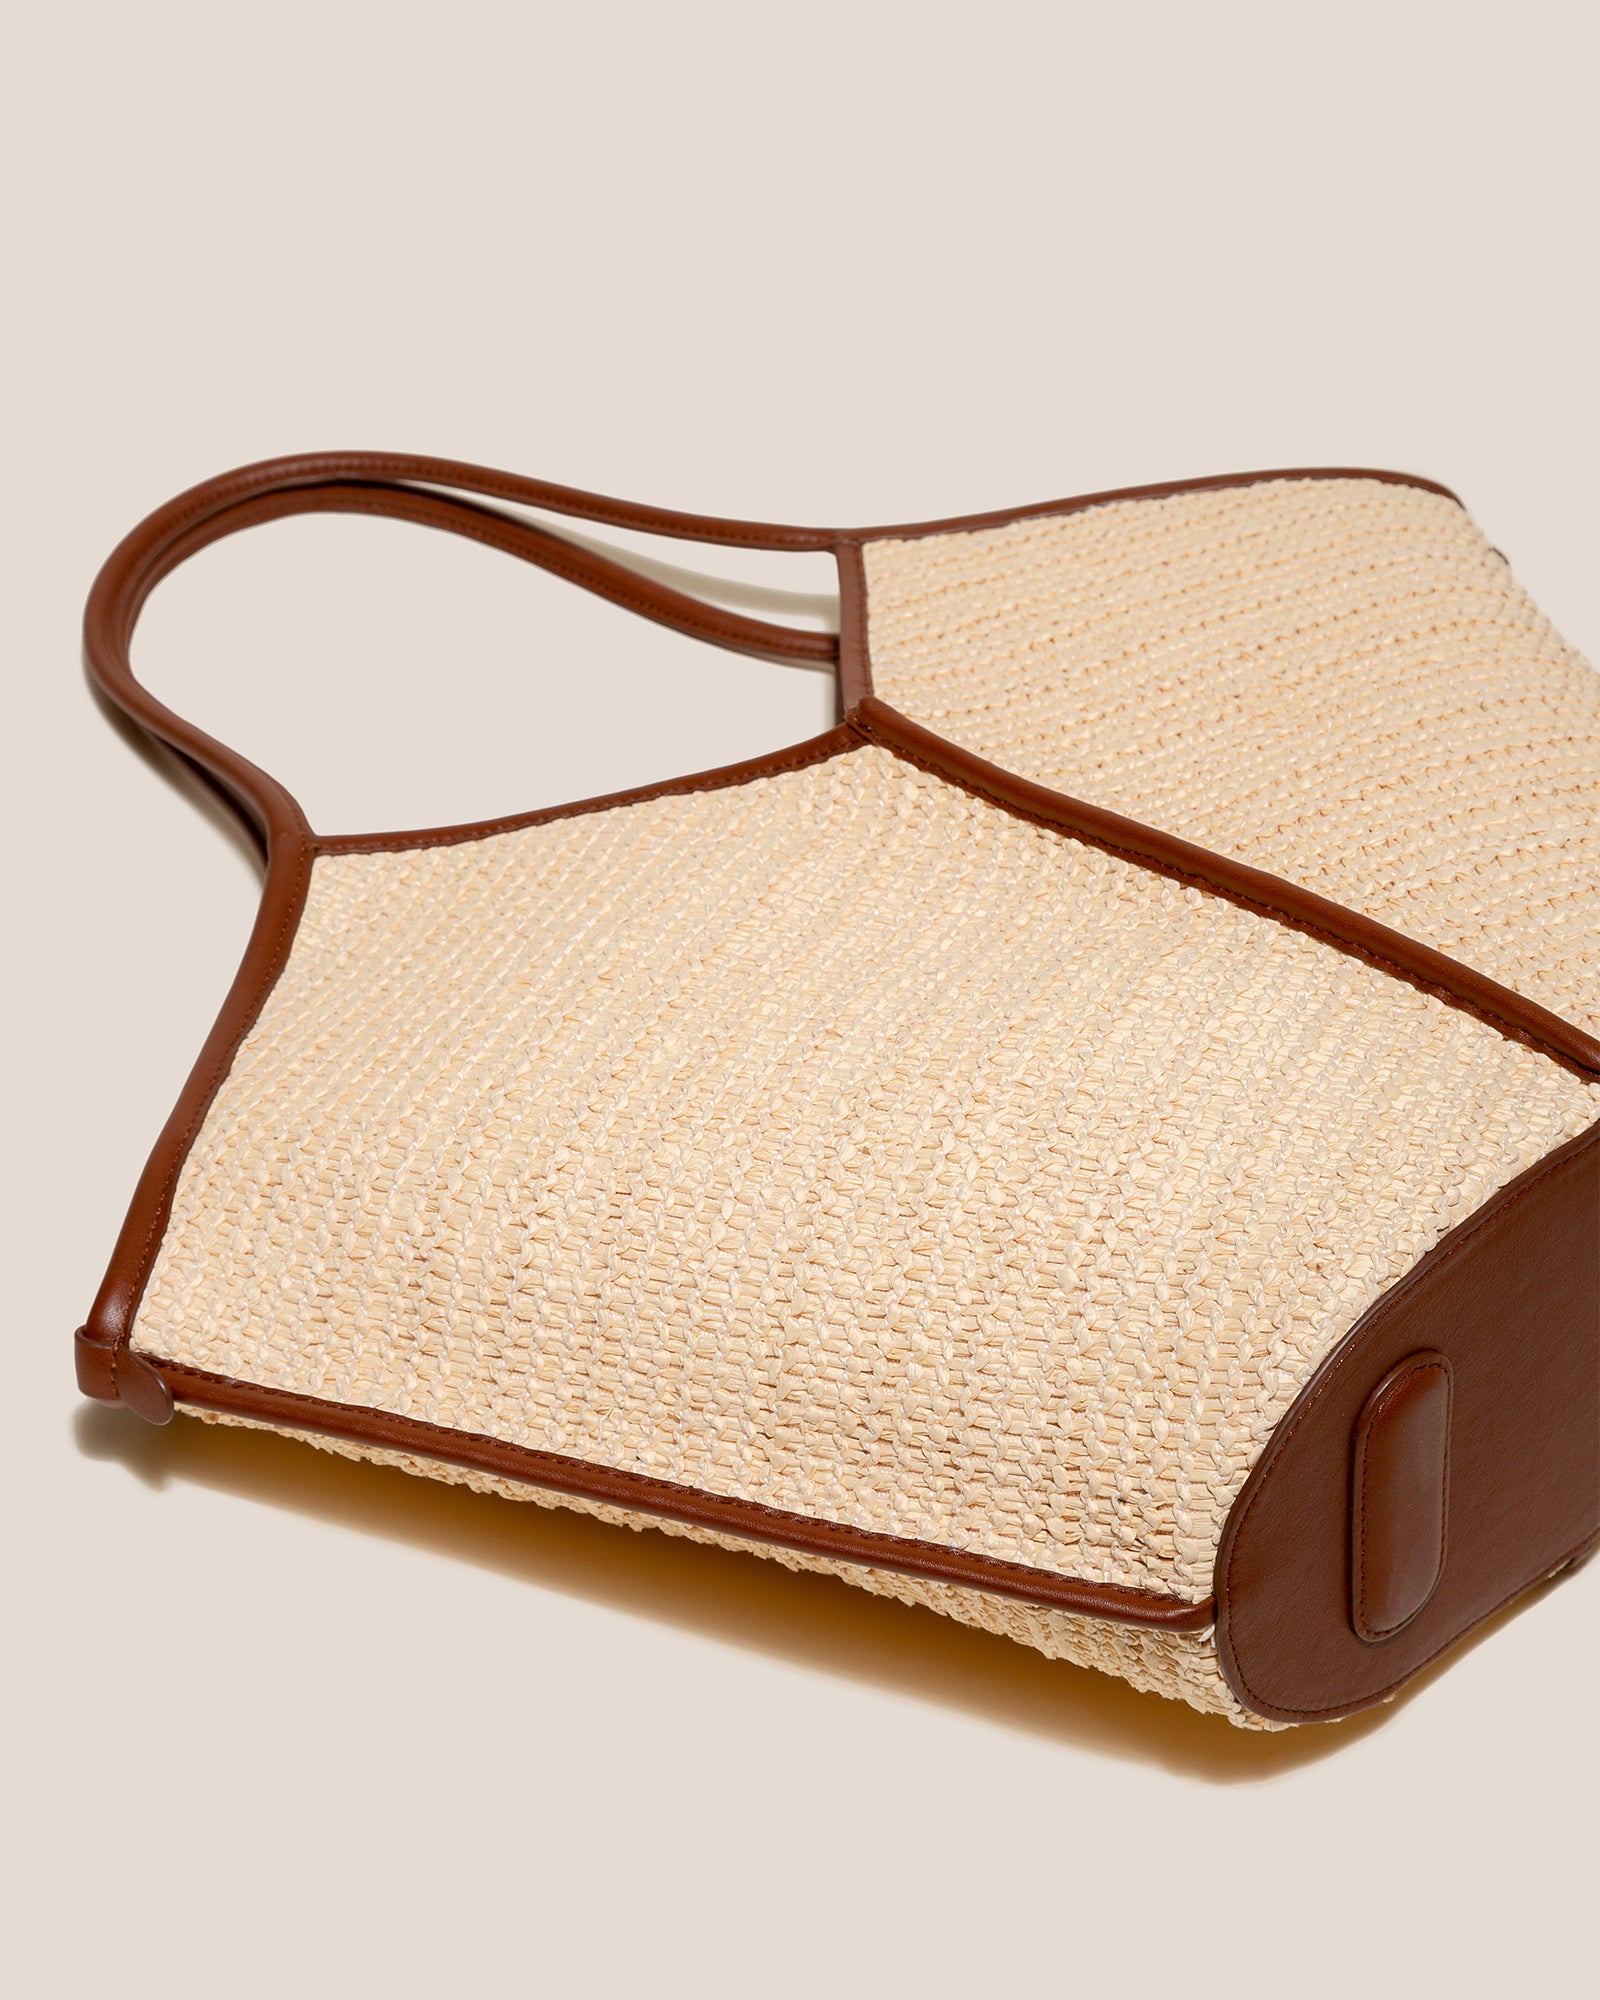 HEREU Calella Leather-trim Raffia Tote Bag